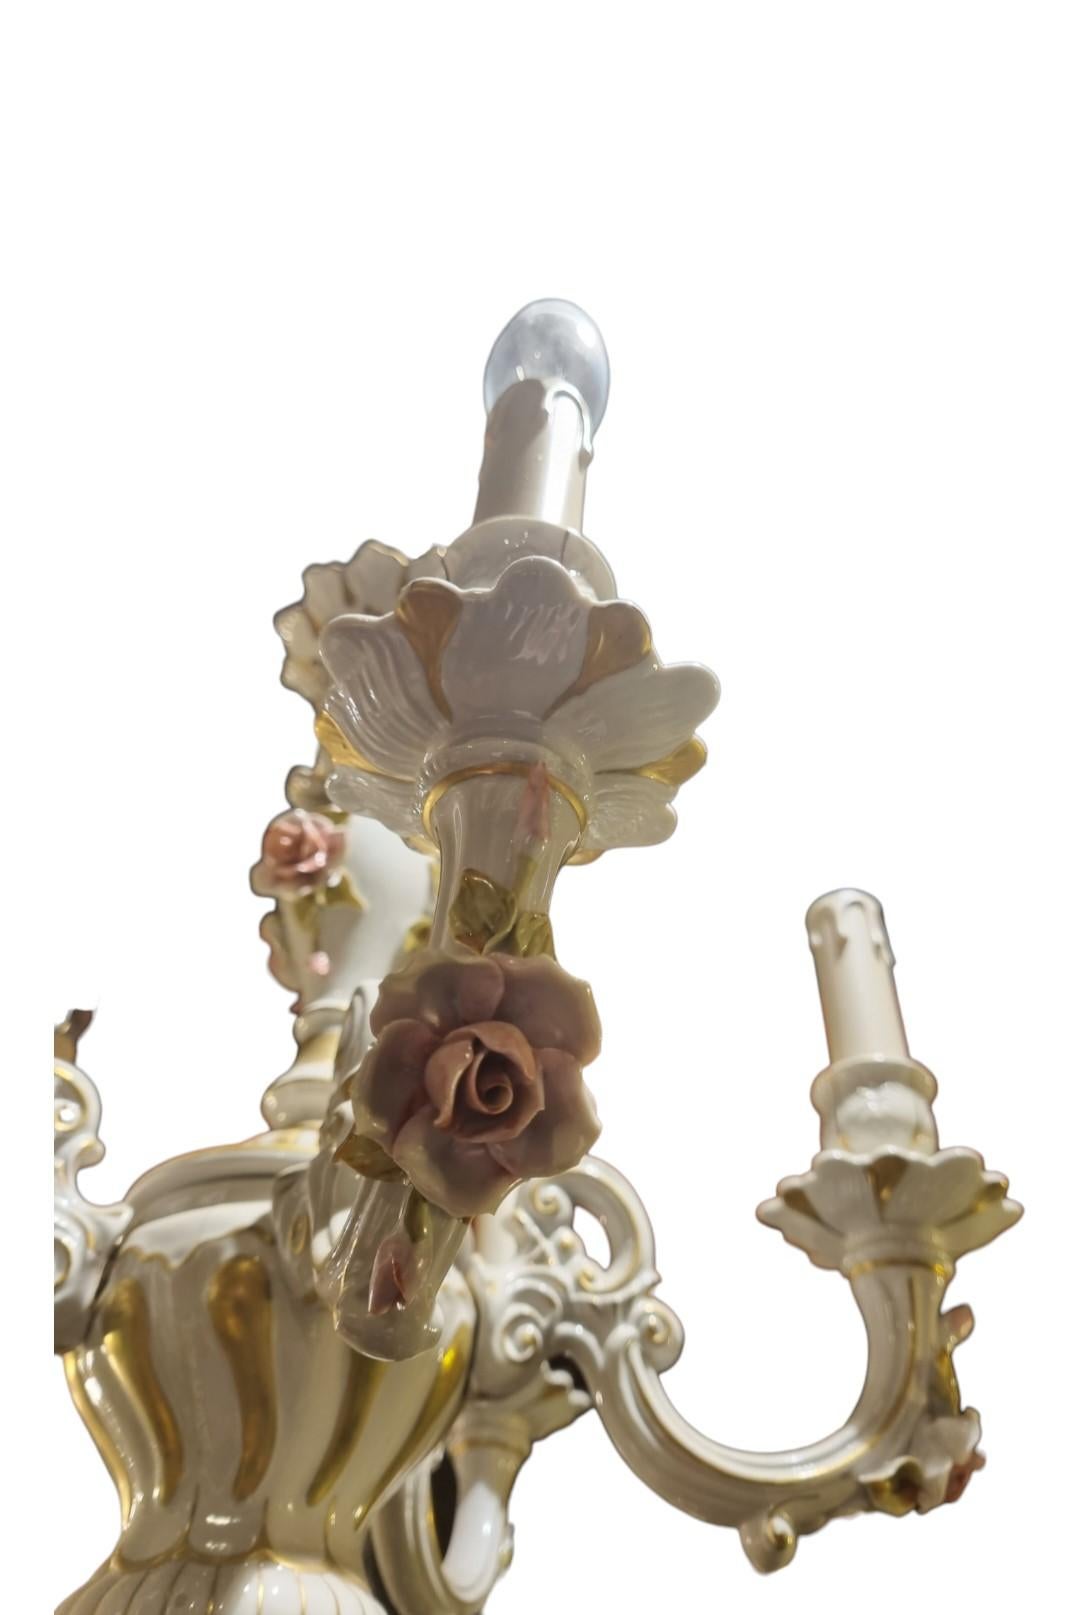 Ein hübscher Capo Di Monte-Kronleuchter mit fünf Branches
Wunderschöne Dekoration mit Porzellanblumen und vergoldetem Dekor,
Dieser Kronleuchter stammt aus den 1950er Jahren und wurde neu verkabelt und aufgehängt